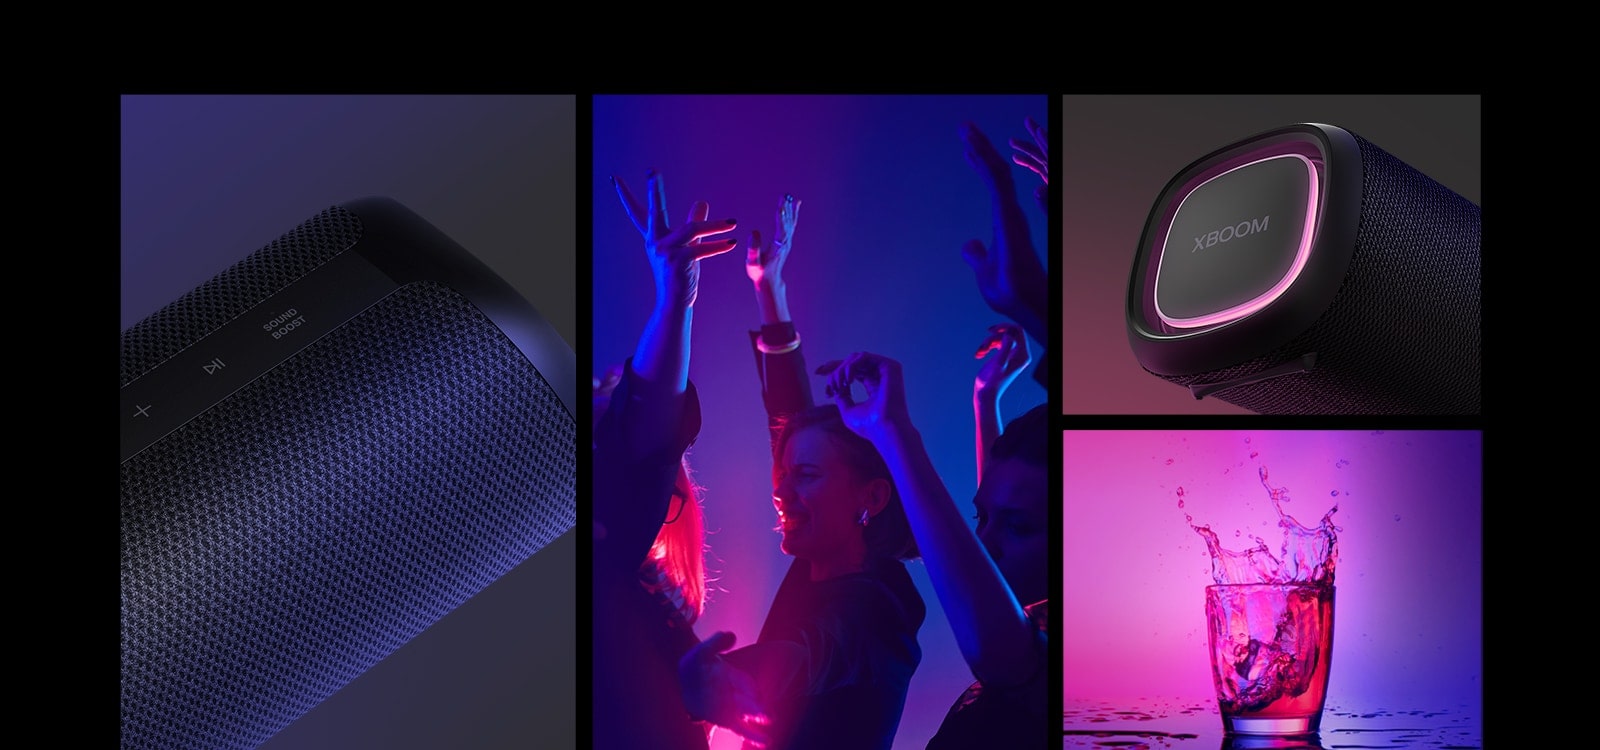 مجموعة. من اليسار، منظر عن قرب لمكبّر الصوت LG XBOOM Go XG5. بعد ذلك، صورة لأشخاص يستمتعون بالموسيقى. على اليمين من أعلى إلى أسفل: منظر عن قرب لمكبّر الصوت مع إضاءة وردية وكأسين من المشروبات.